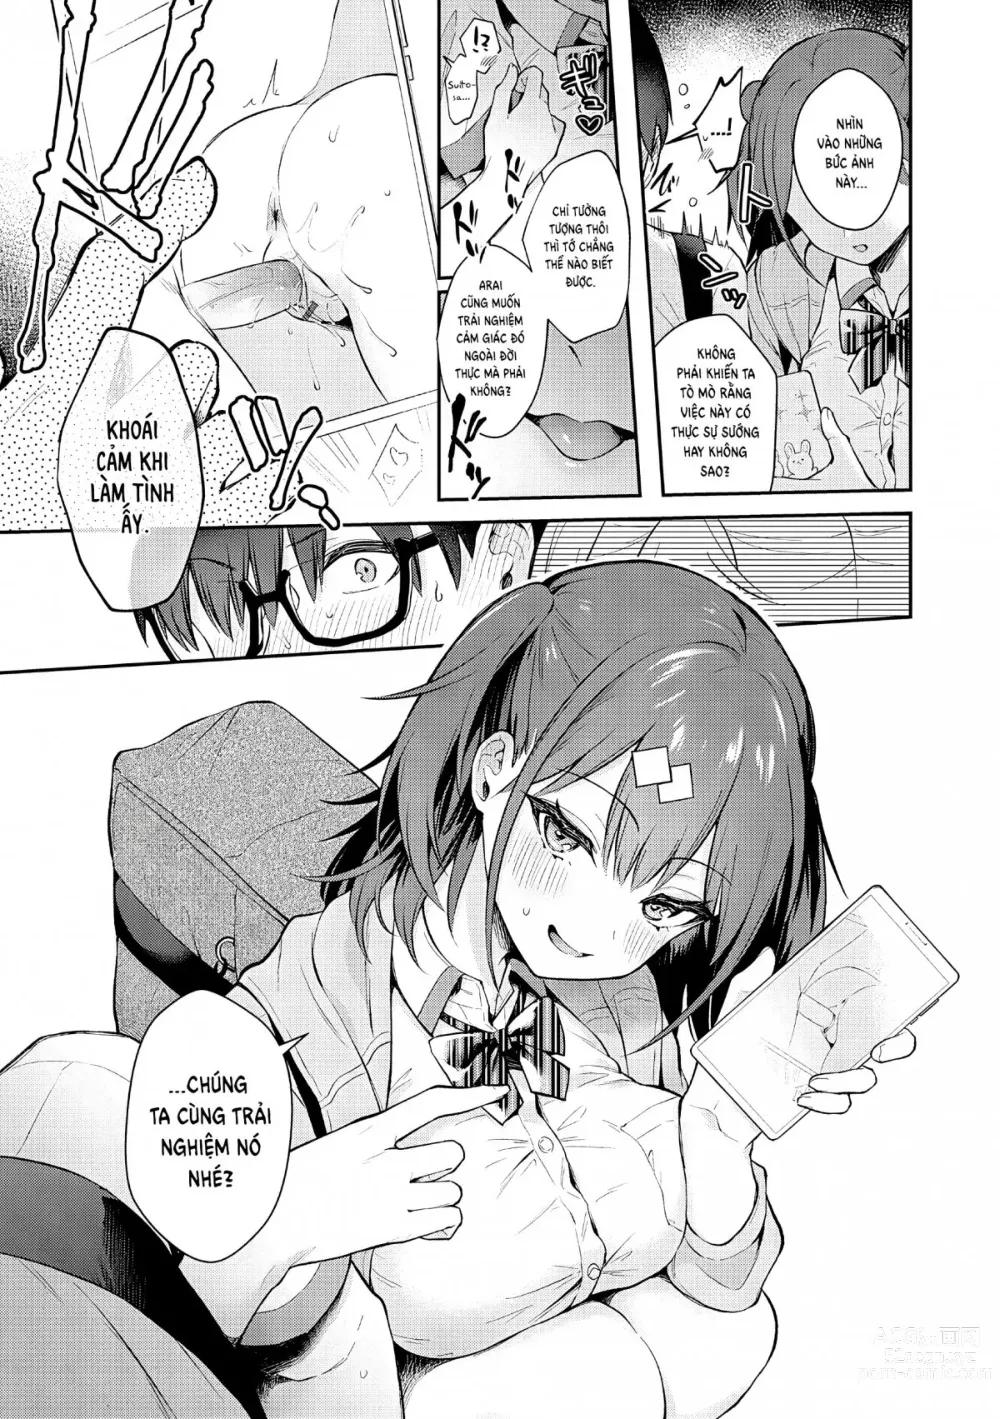 Page 8 of manga Tuyệt hơn cả giả tưởng (decensored)